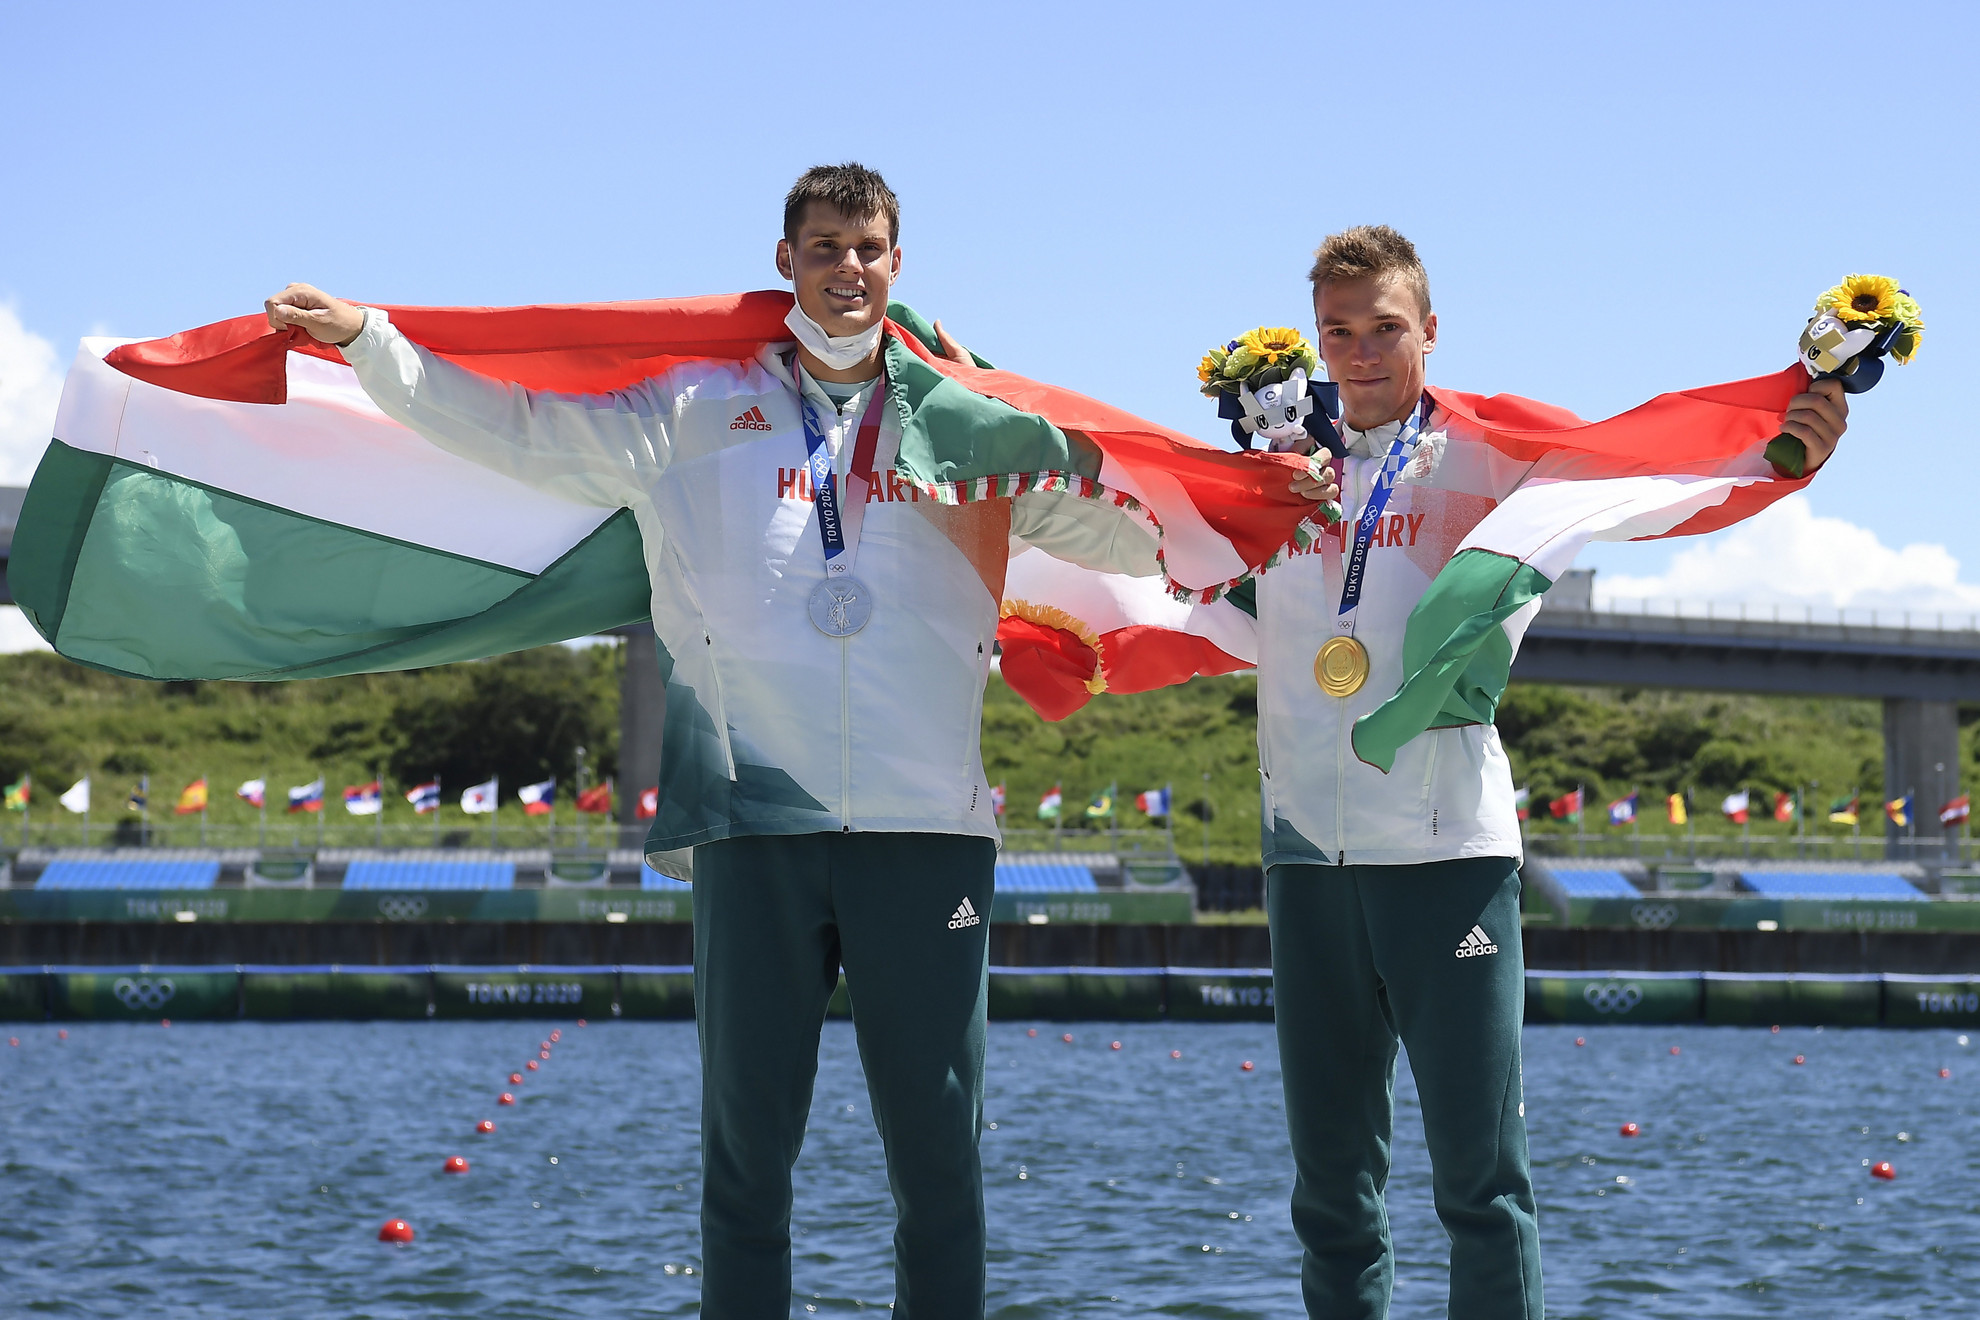 Az aranyérmes Kopasz Bálint (j) és az ezüstérmes Varga Ádám a férfi kajak egyesek 1000 méteres versenyének eredményhirdetésén a világméretű koronavírus-járvány miatt 2021-re halasztott 2020-as tokiói nyári olimpián a Sea Forest Kajak-kenu Pályán 2021. augusztus 3-án